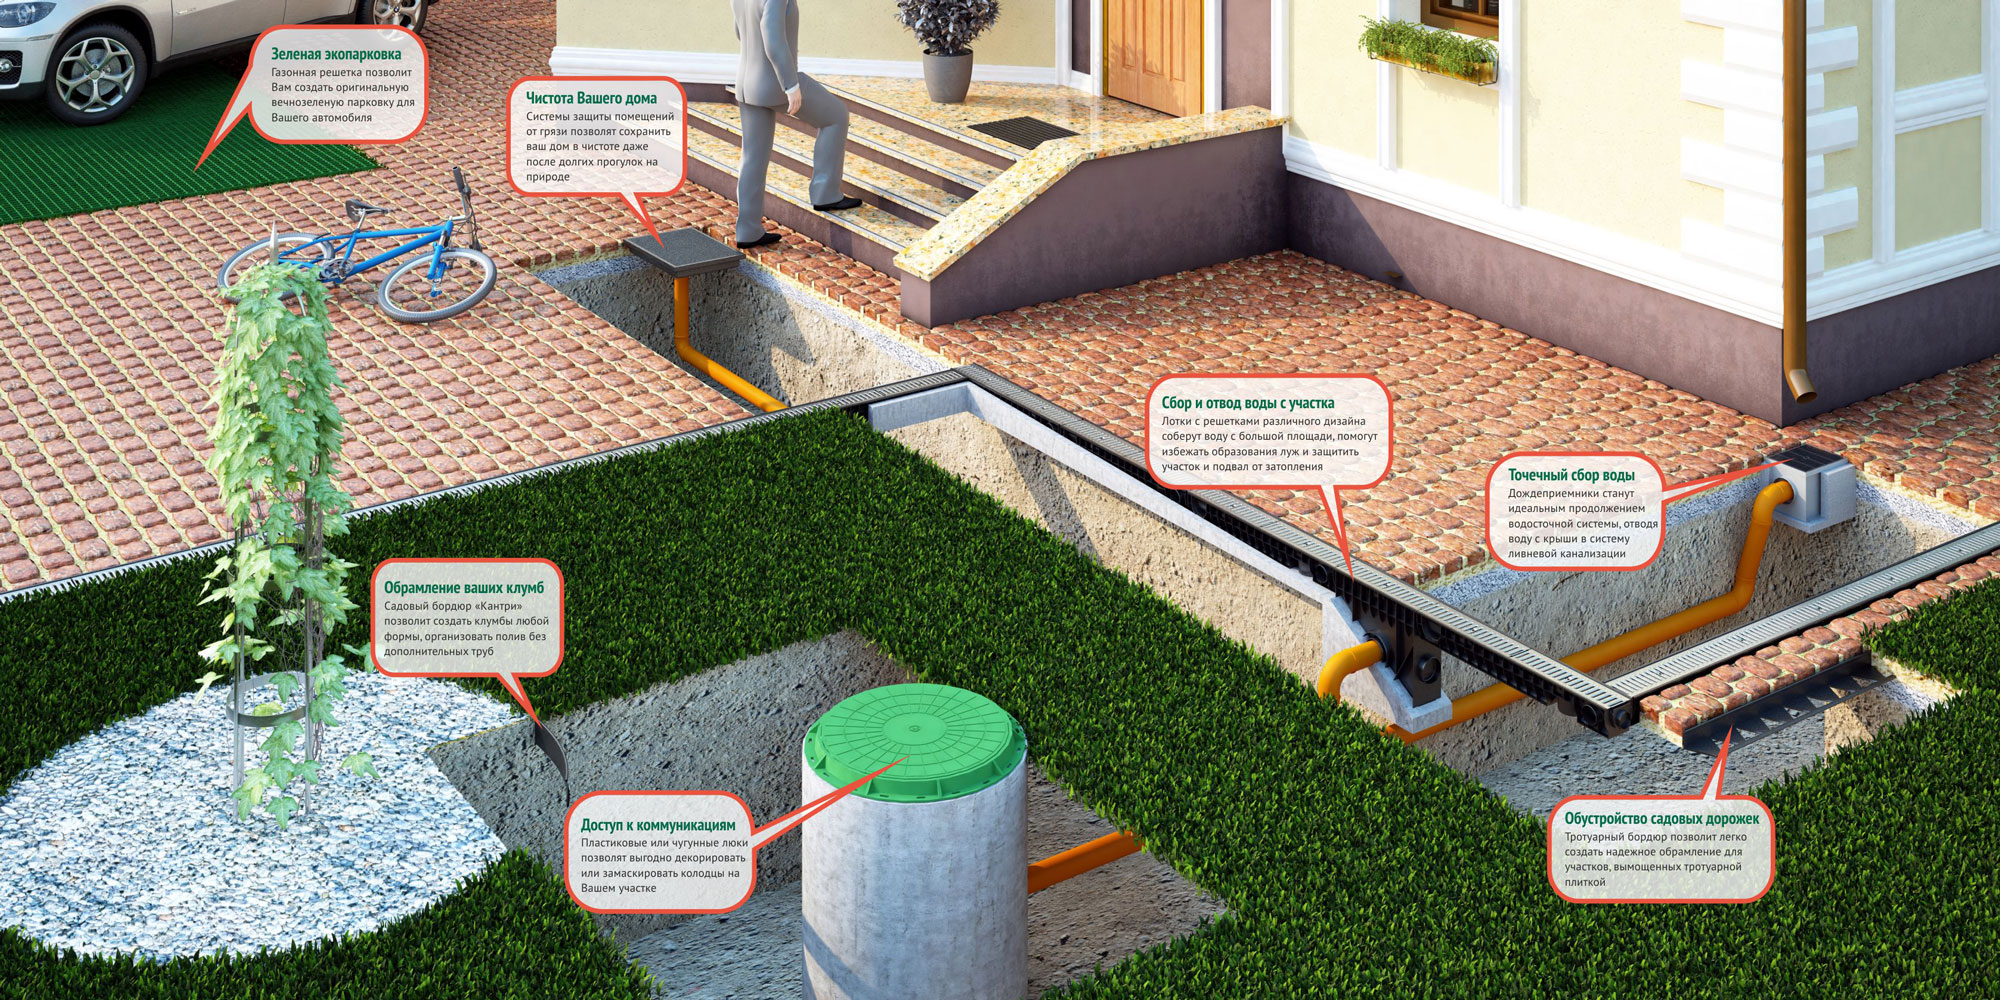 Надежные способы отвода воды от фундамента дома